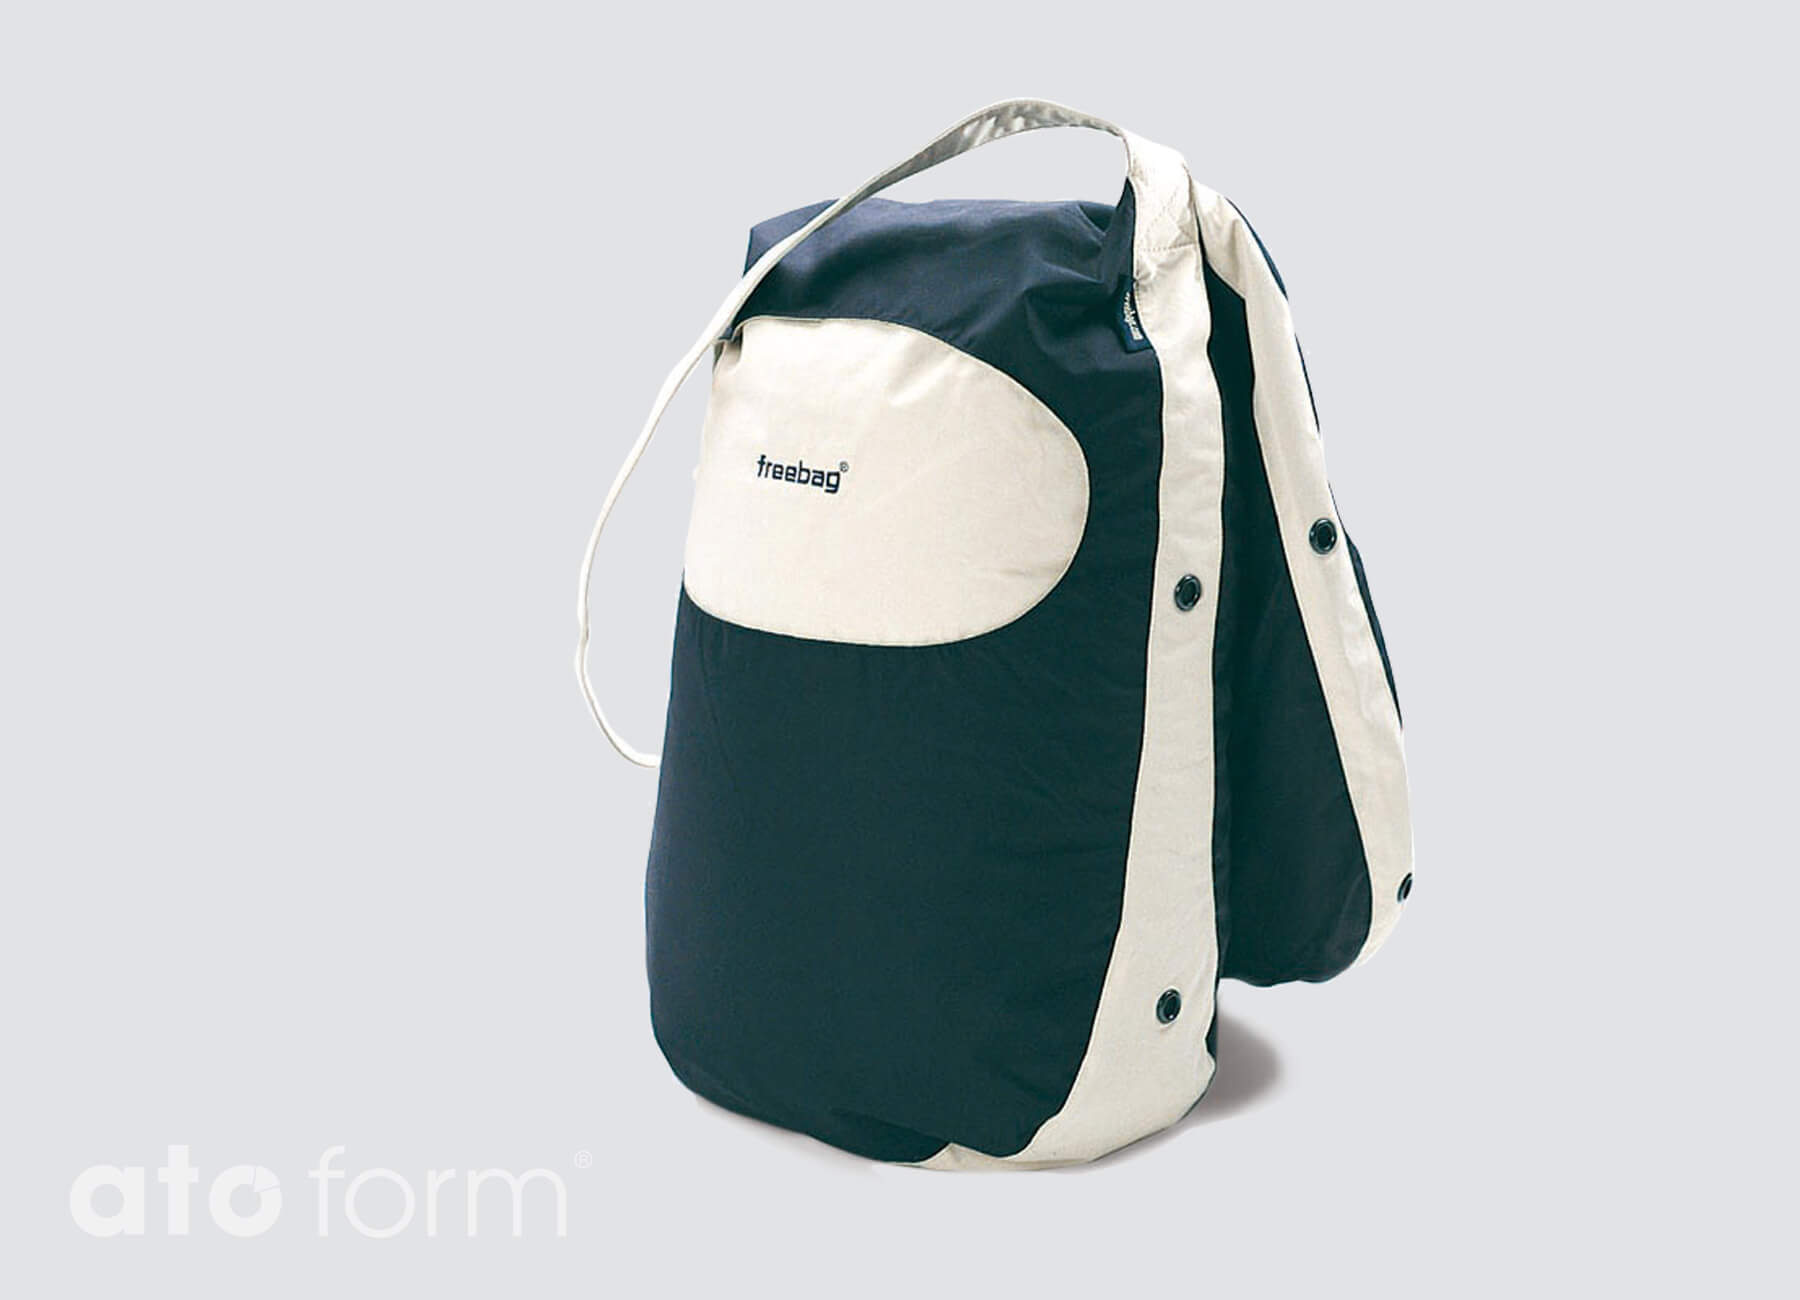 Freebag Comfort - Komfort-, Stabilisierungs- und Lagerungskissen